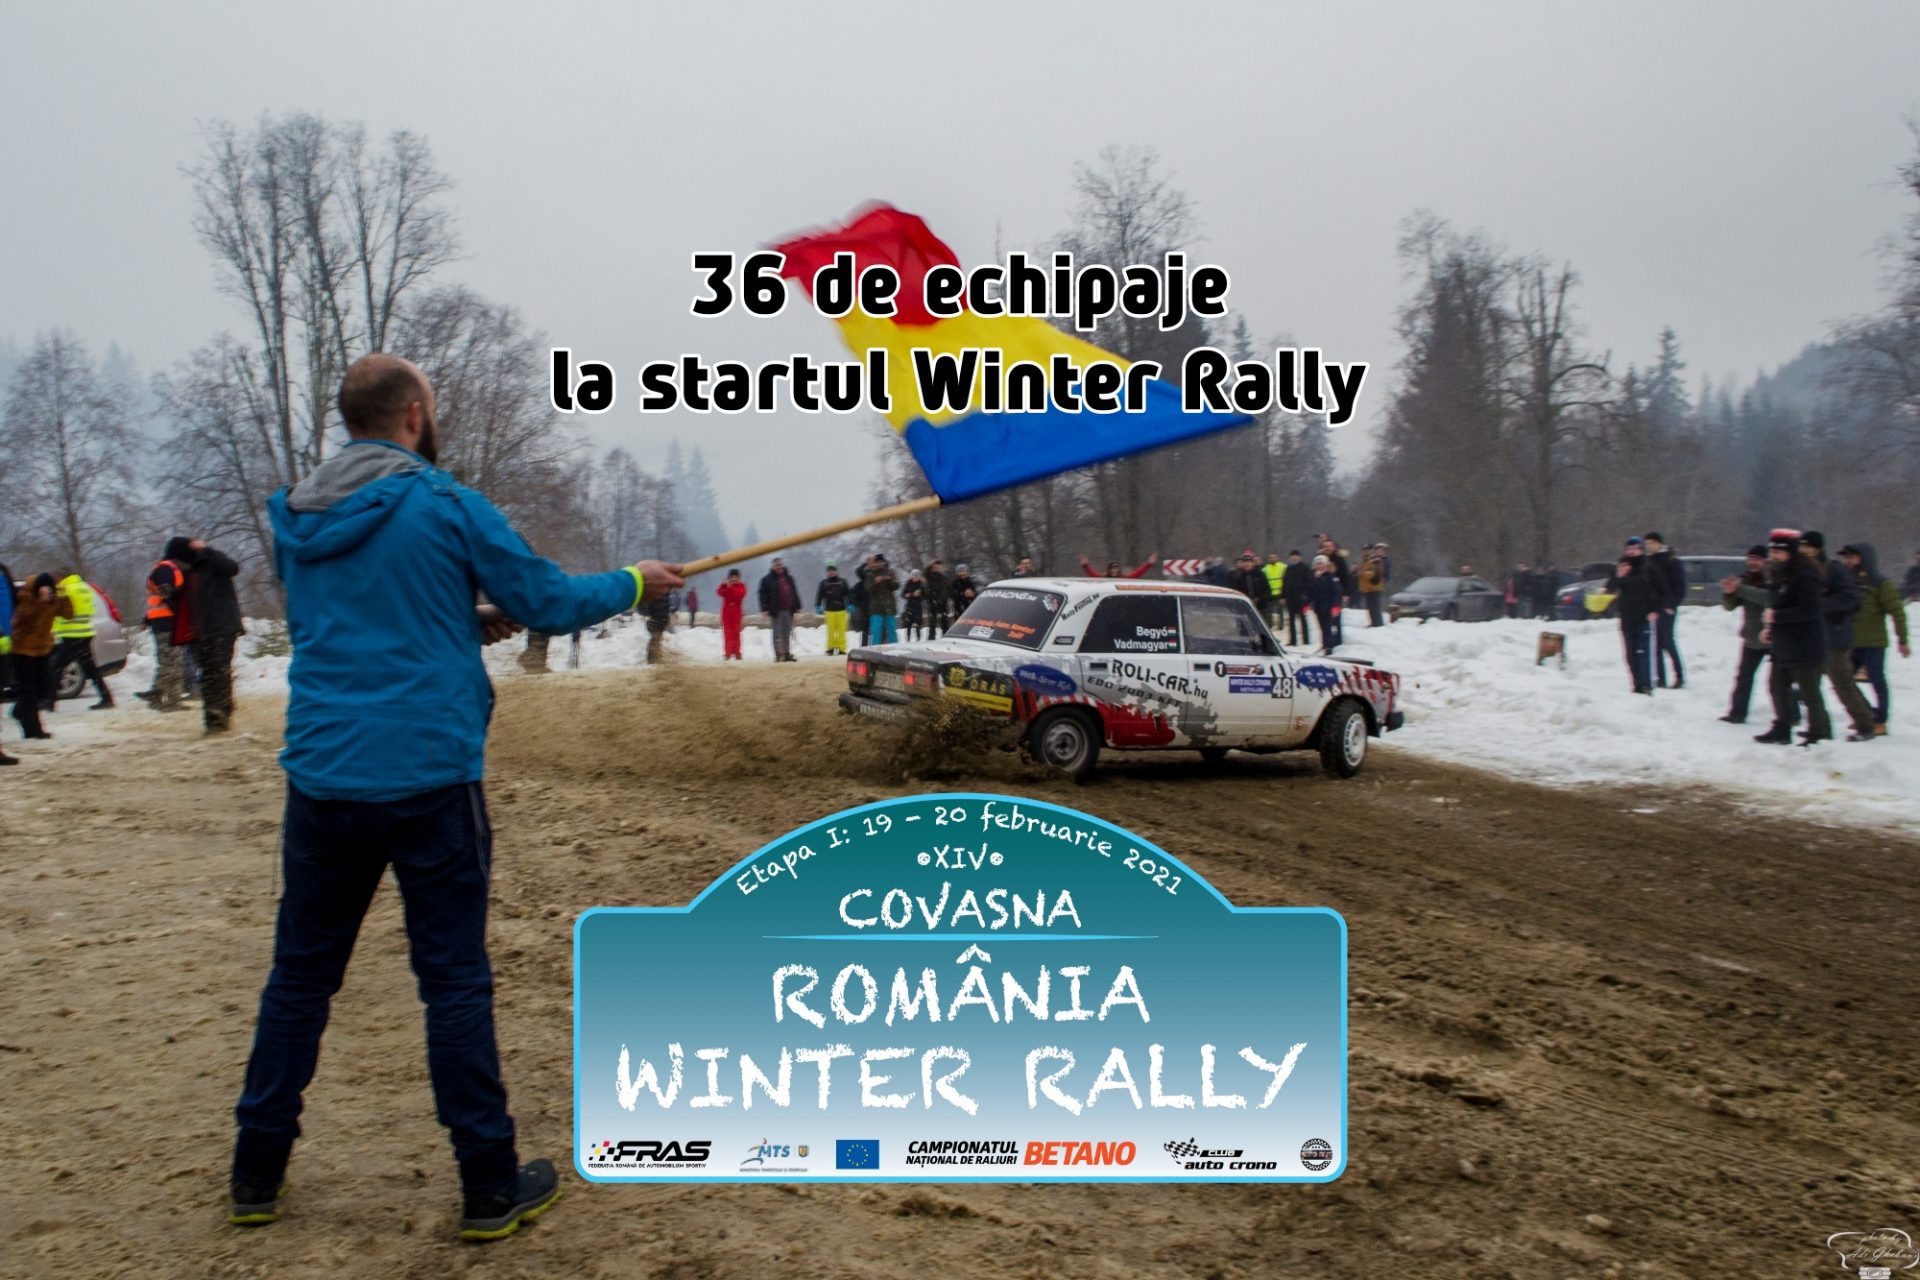 38 de echipaje pornesc în România Winter Rally 2021